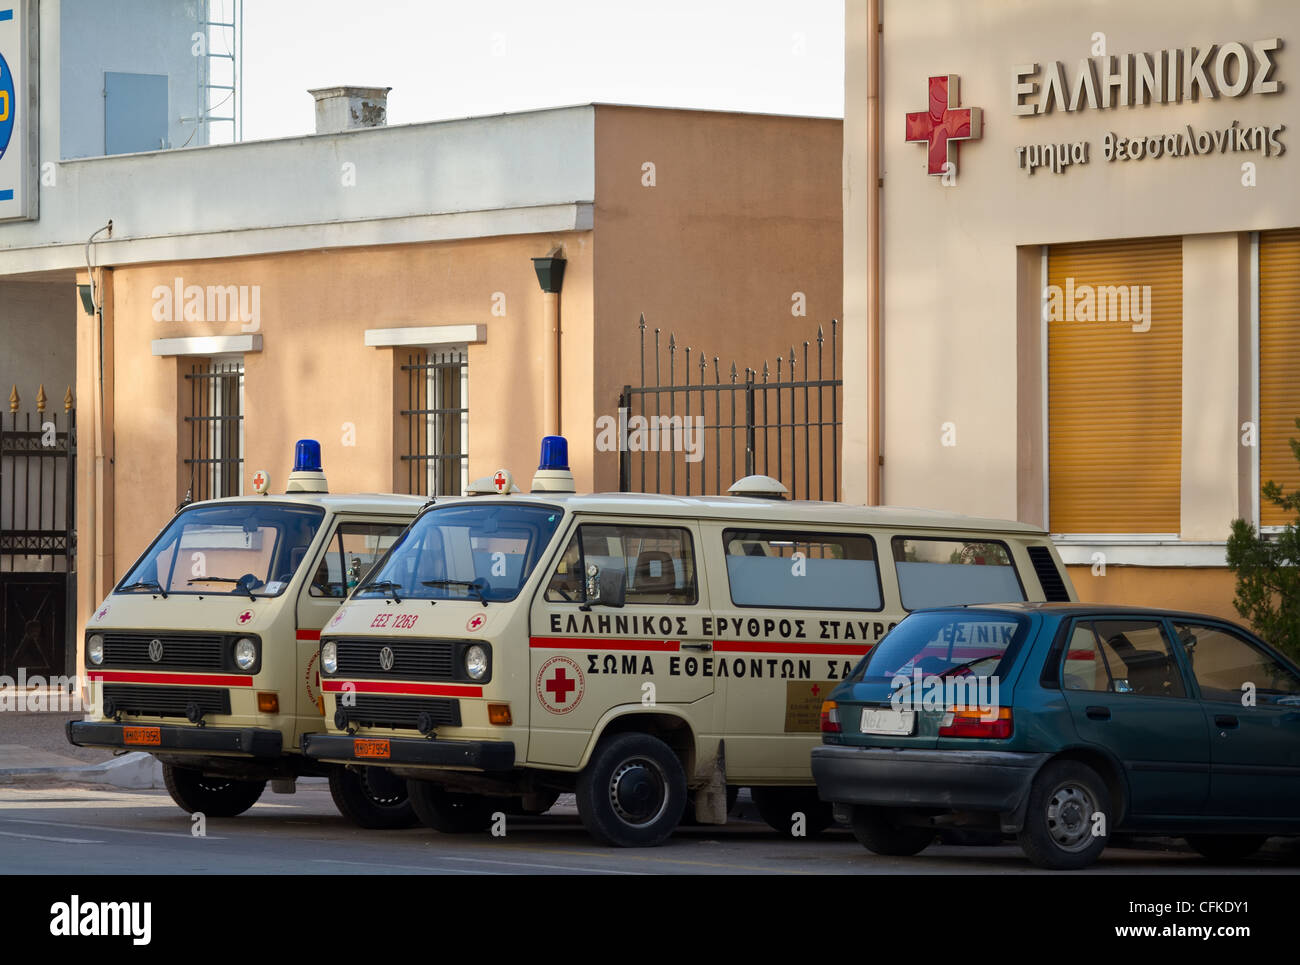 Ambulanze parcheggiato presso un ospedale pronto all'uso quando necessario. Salonicco, Macedonia, Grecia Foto Stock